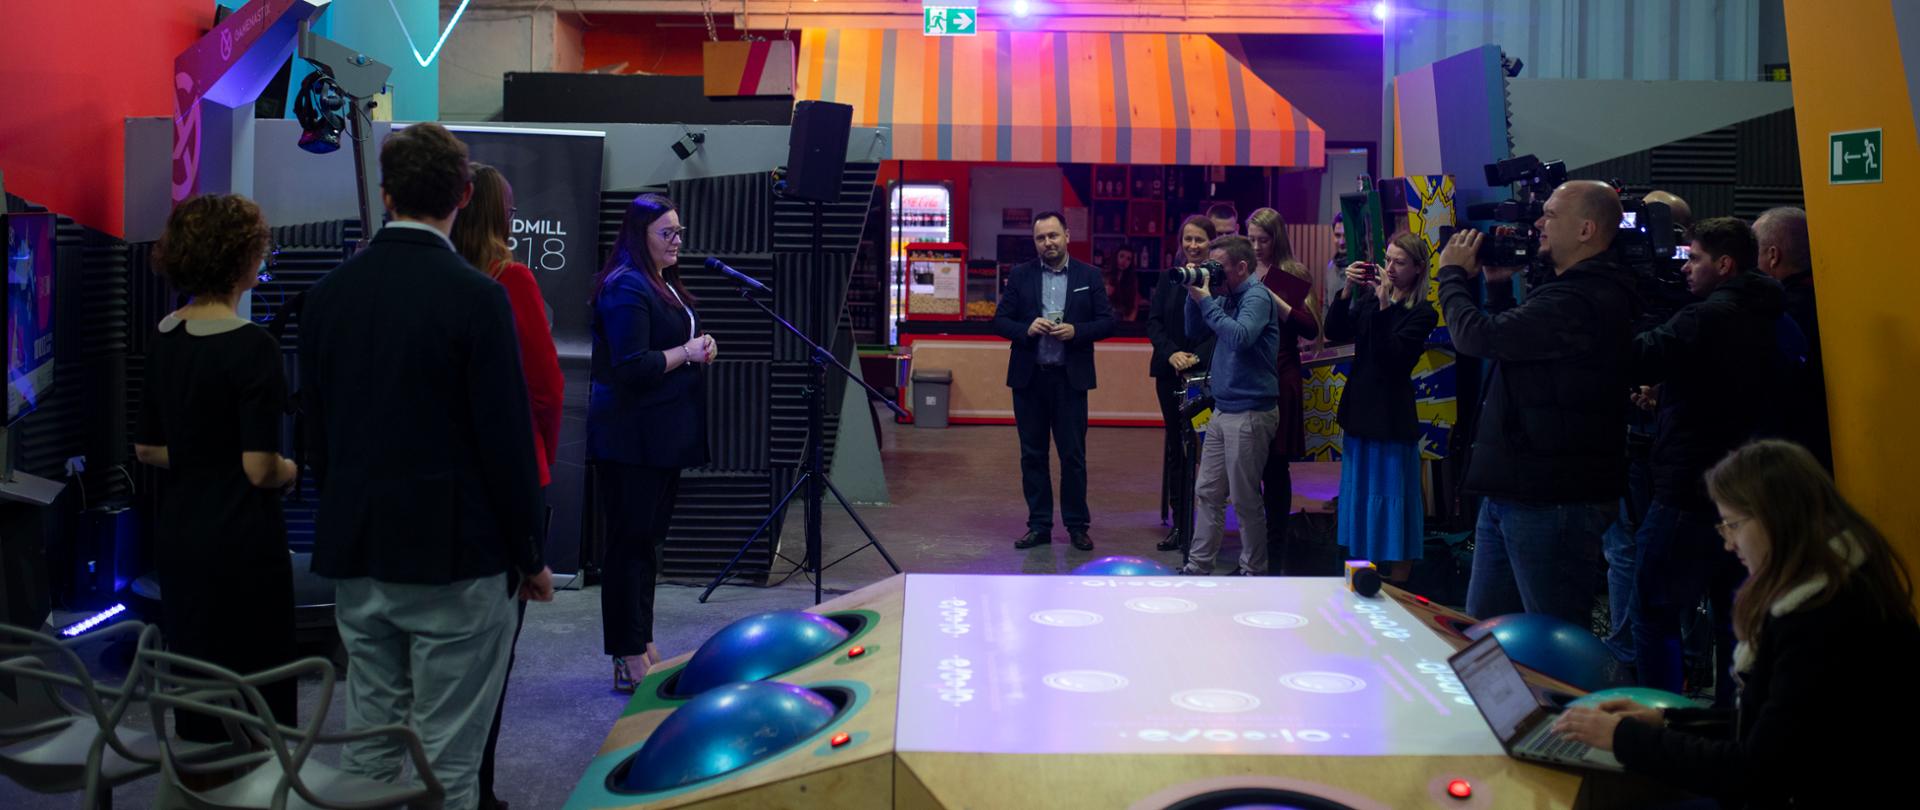 Wnętrze hali, na środku sprzęt do gier VR, po lewej stronie minister Jarosińska-Jedynak, po prawej dziennikarze z kamerami.